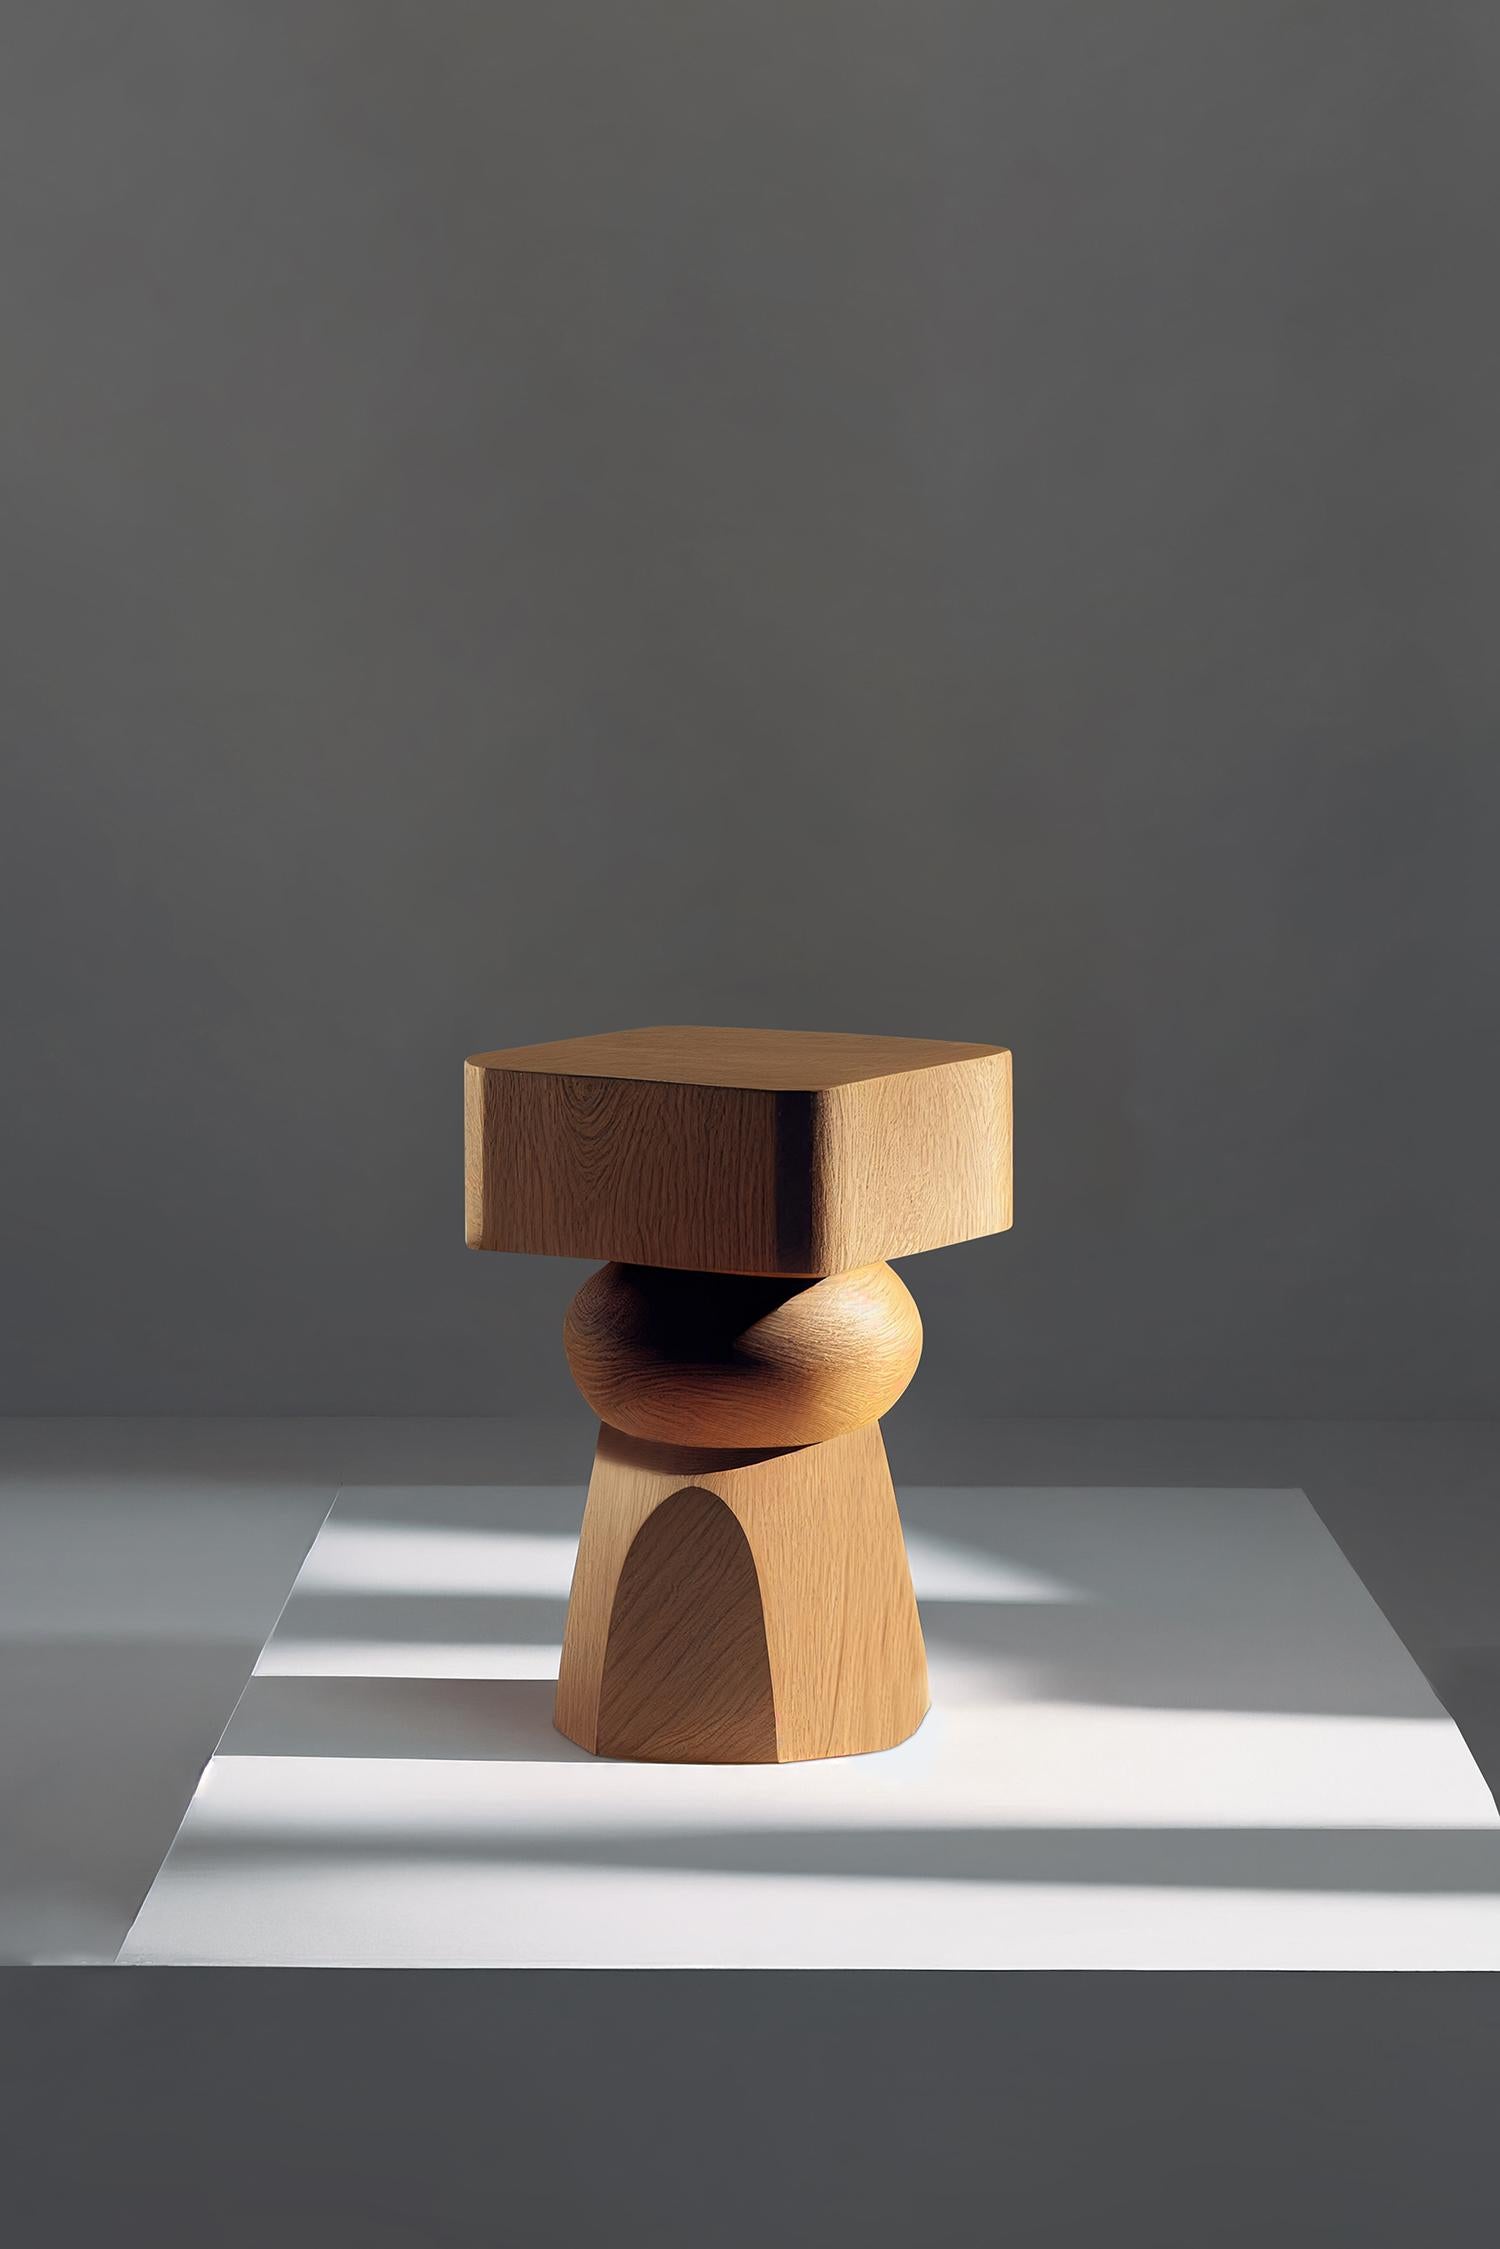 Socle 6 Beistelltisch, Beistelltisch, Nachttisch

Socle ist ein kleiner Tisch aus Massivholz, der vom NONO Designteam entworfen wurde. Die aufwendige Konstruktion aus Massivholz dient als Stütze, ähnlich wie ein Sockel für eine Statue oder